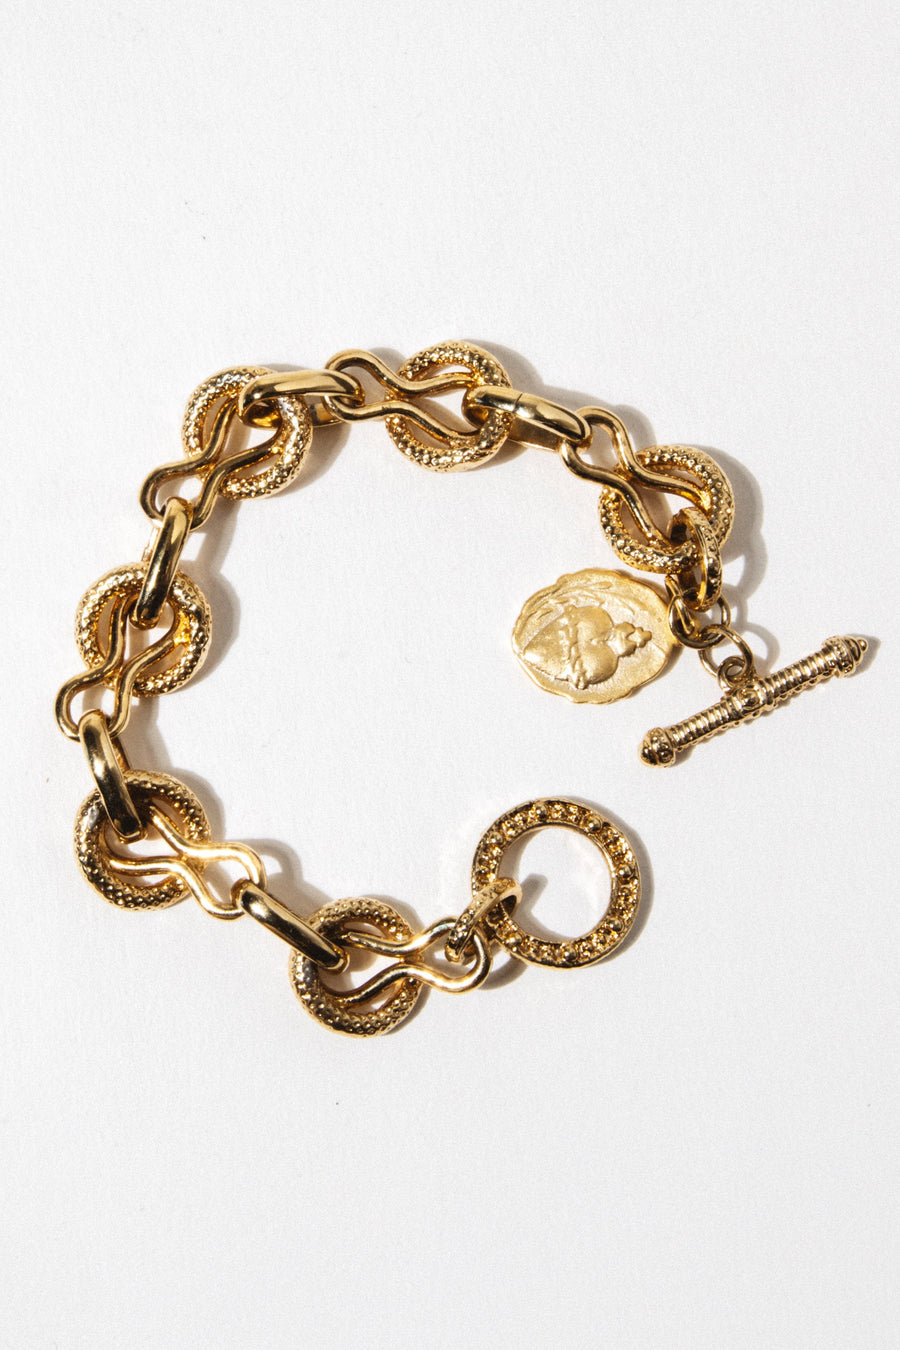 Goddess Jewelry Gold Italiana Bracelet